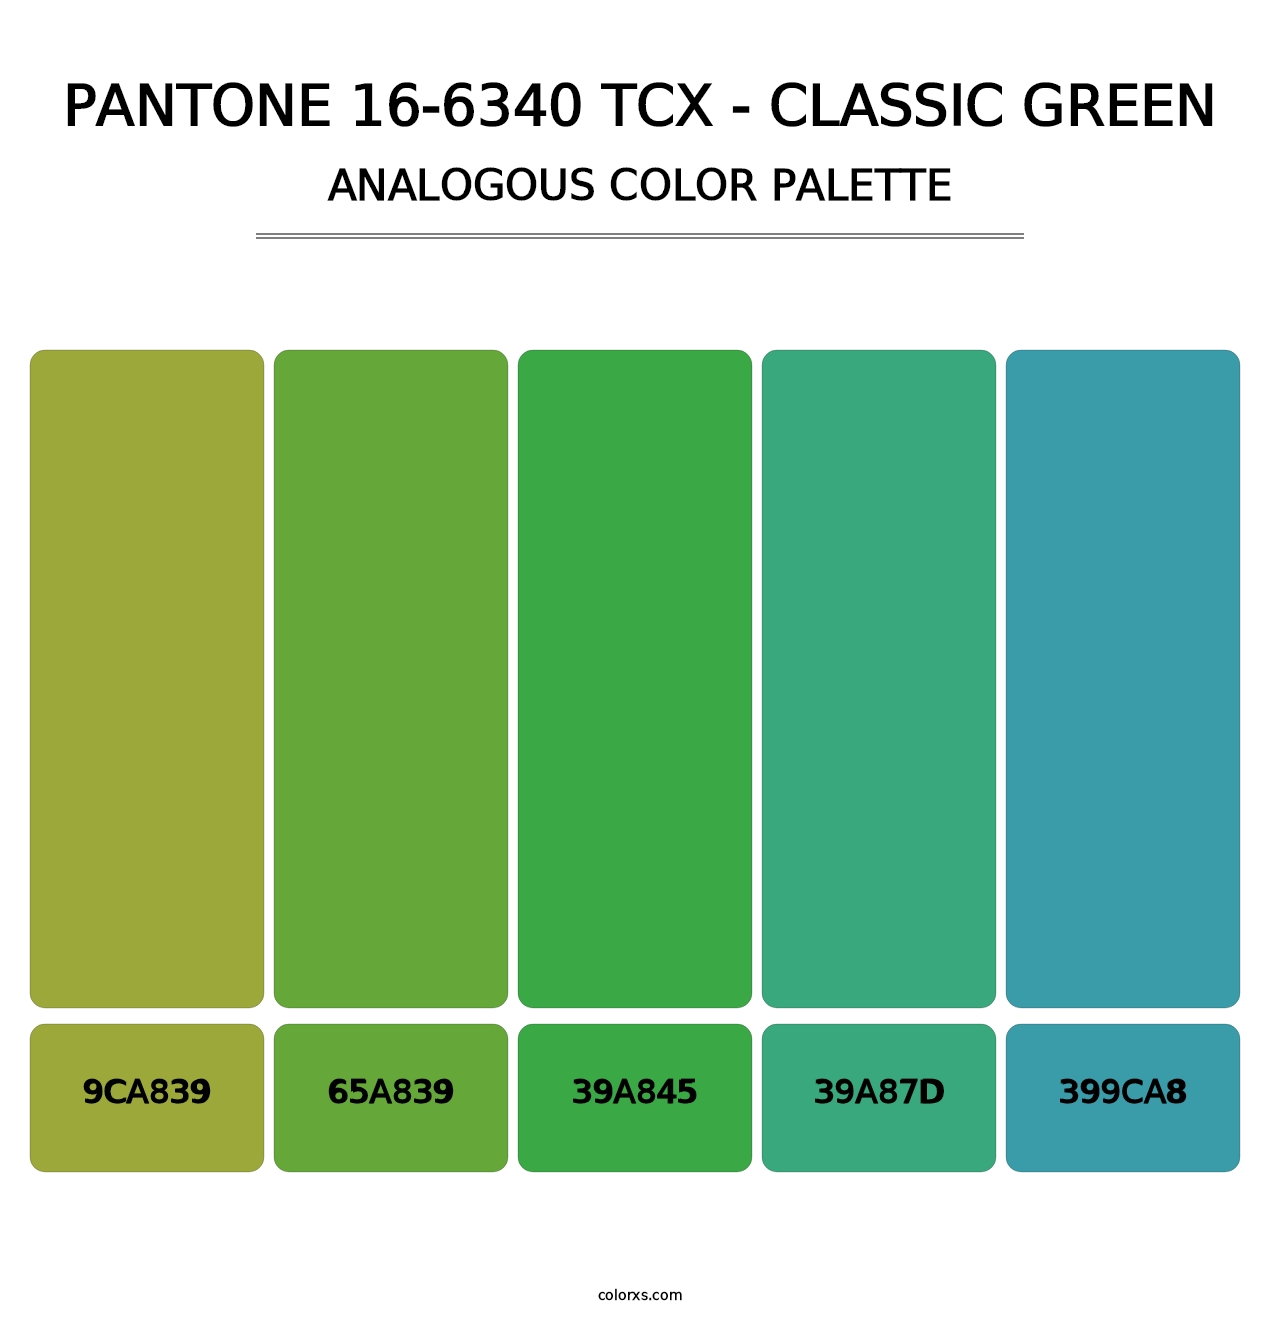 PANTONE 16-6340 TCX - Classic Green - Analogous Color Palette